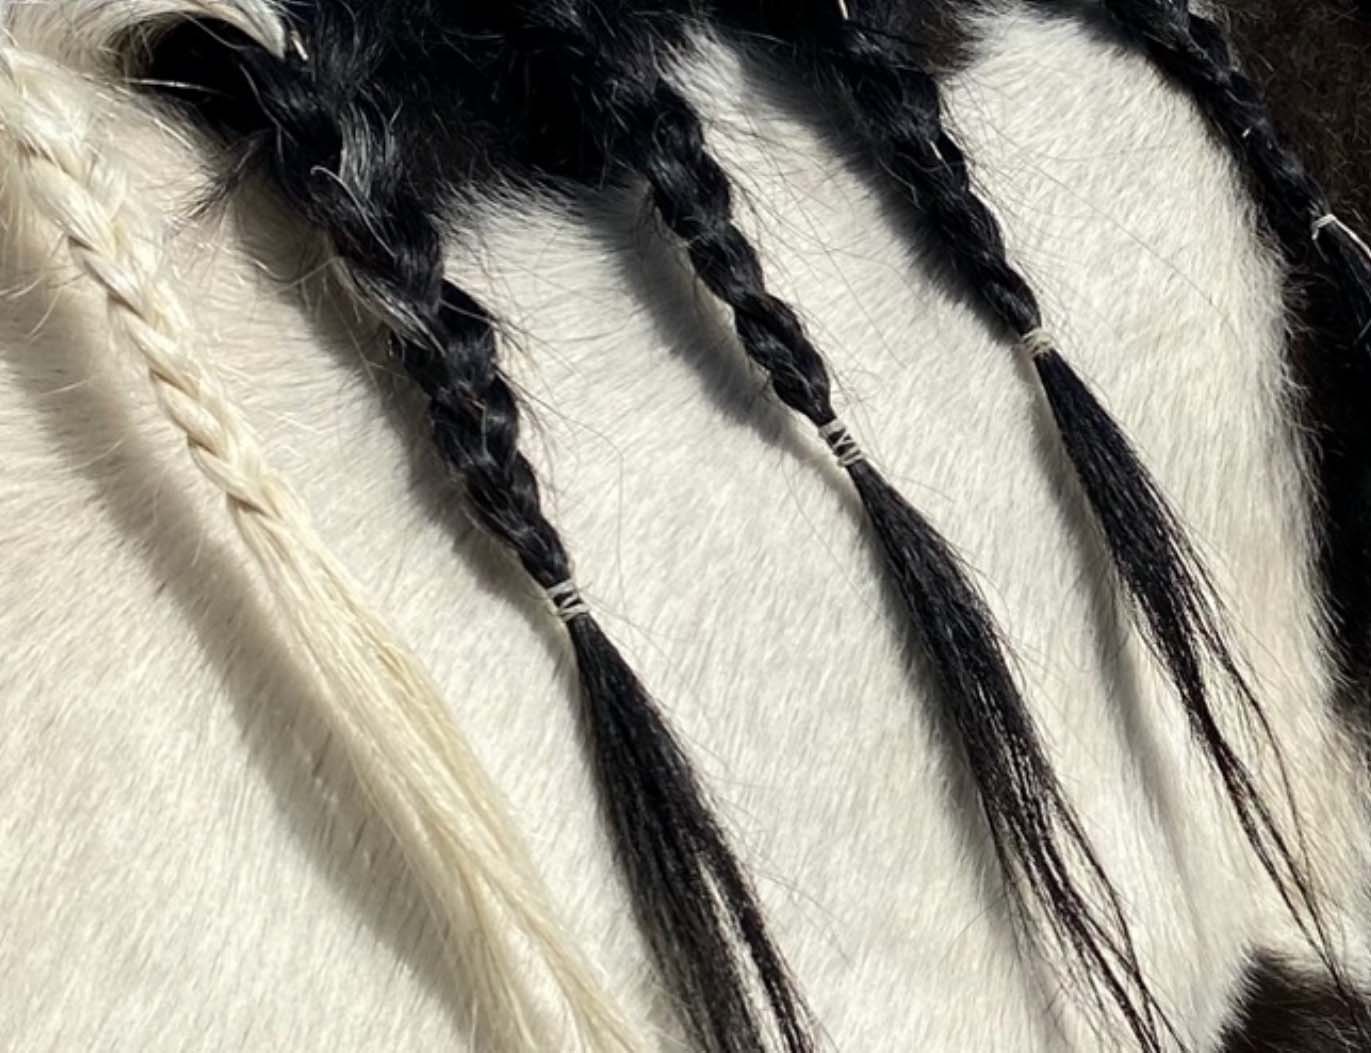 Cree's black and white braided mane